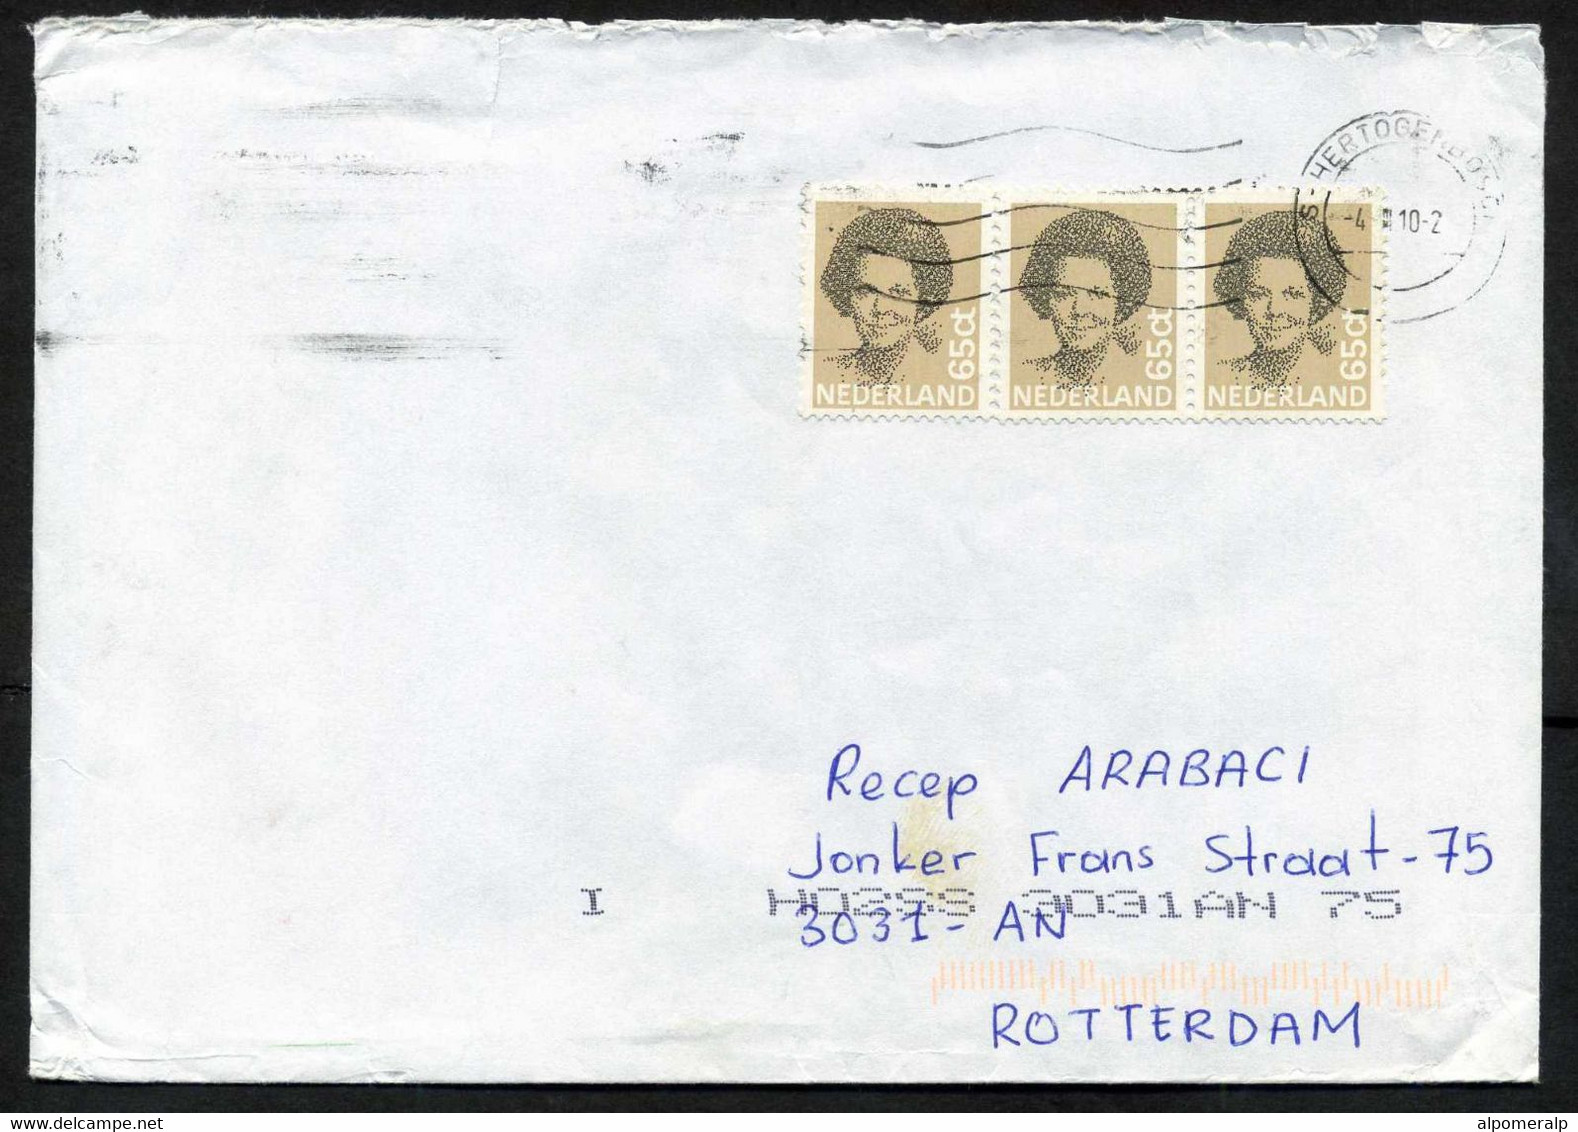 Netherlands 's-Hertogenbosch 2010 Mail Cover Used To Turkey | Mi 1197 Queen Beatrix, Type 'Struyken' - Cartas & Documentos